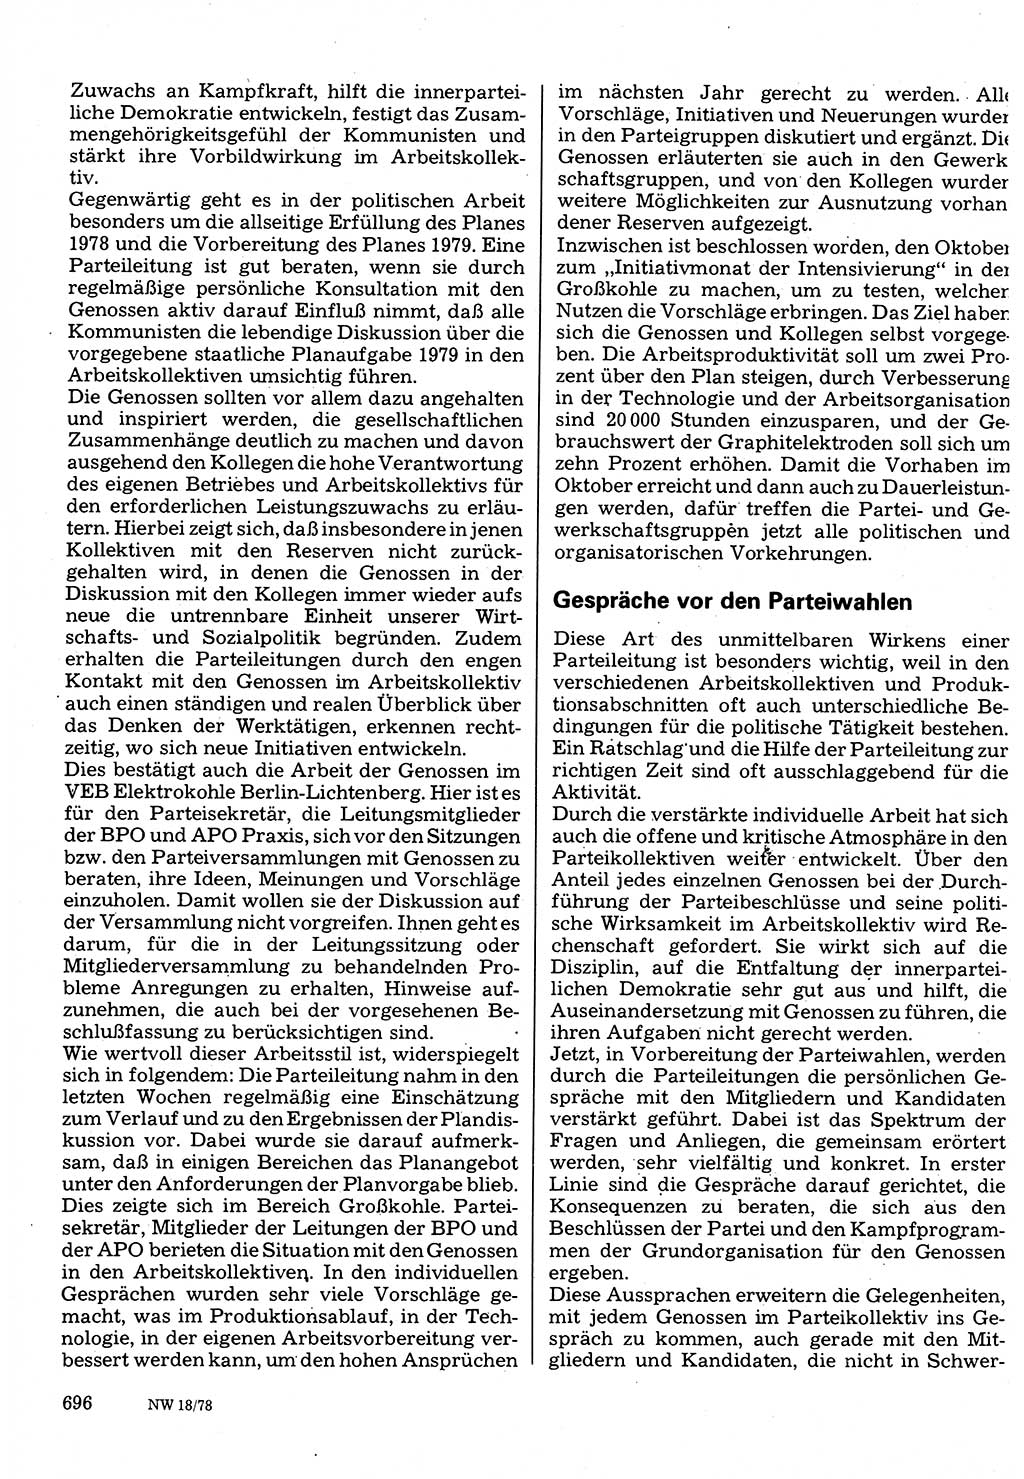 Neuer Weg (NW), Organ des Zentralkomitees (ZK) der SED (Sozialistische Einheitspartei Deutschlands) für Fragen des Parteilebens, 33. Jahrgang [Deutsche Demokratische Republik (DDR)] 1978, Seite 696 (NW ZK SED DDR 1978, S. 696)